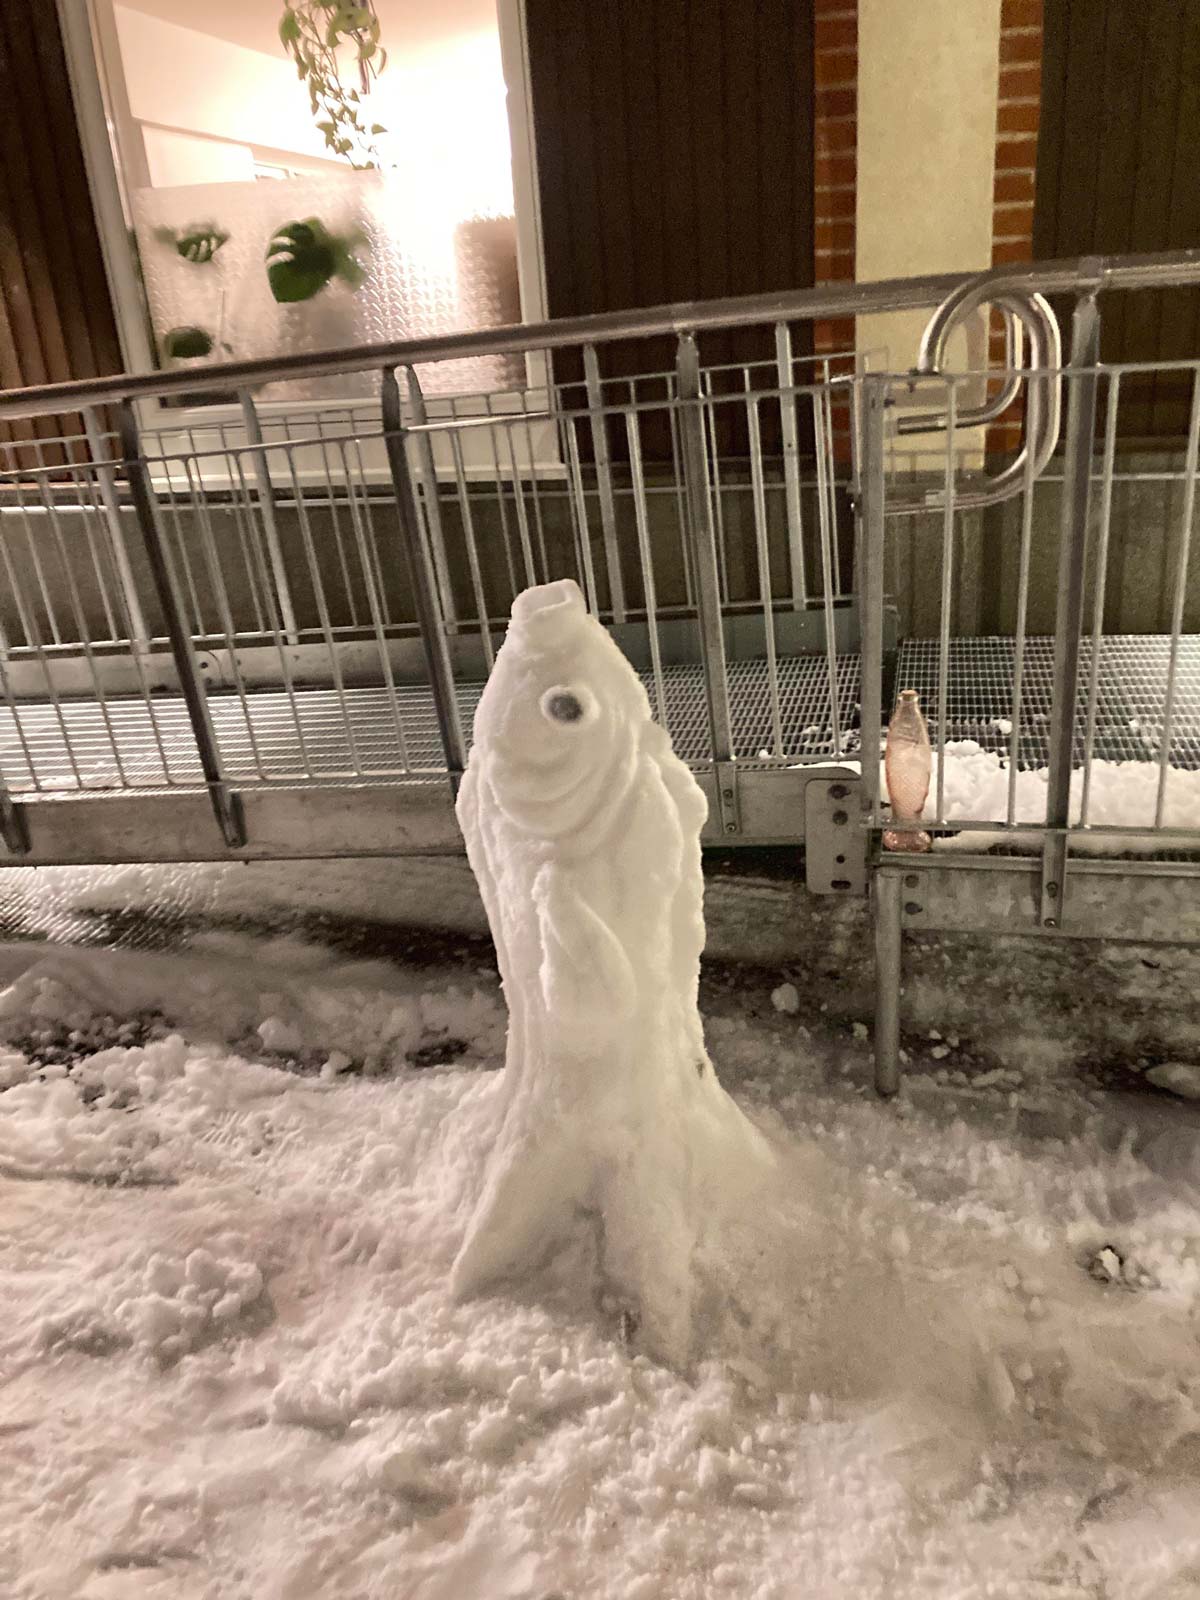 I made a snow-fish